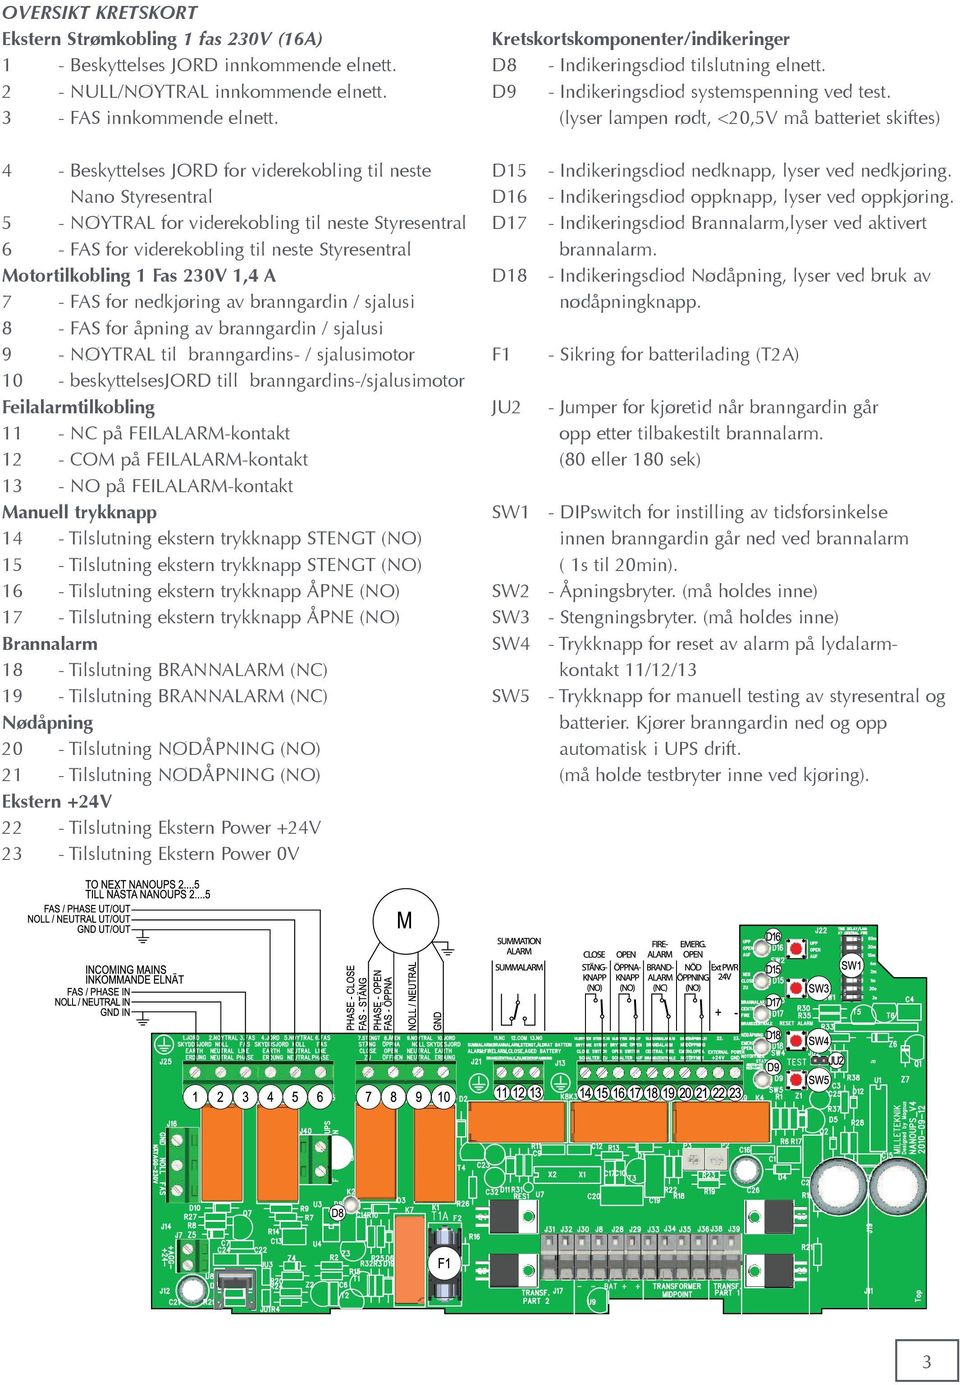 (lyser lampen rødt, <20,5V må batteriet skiftes) 4 - Beskyttelses JORD for viderekobling til neste Nano Styresentral 5 - NØYTRAL for viderekobling til neste Styresentral 6 - FAS for viderekobling til